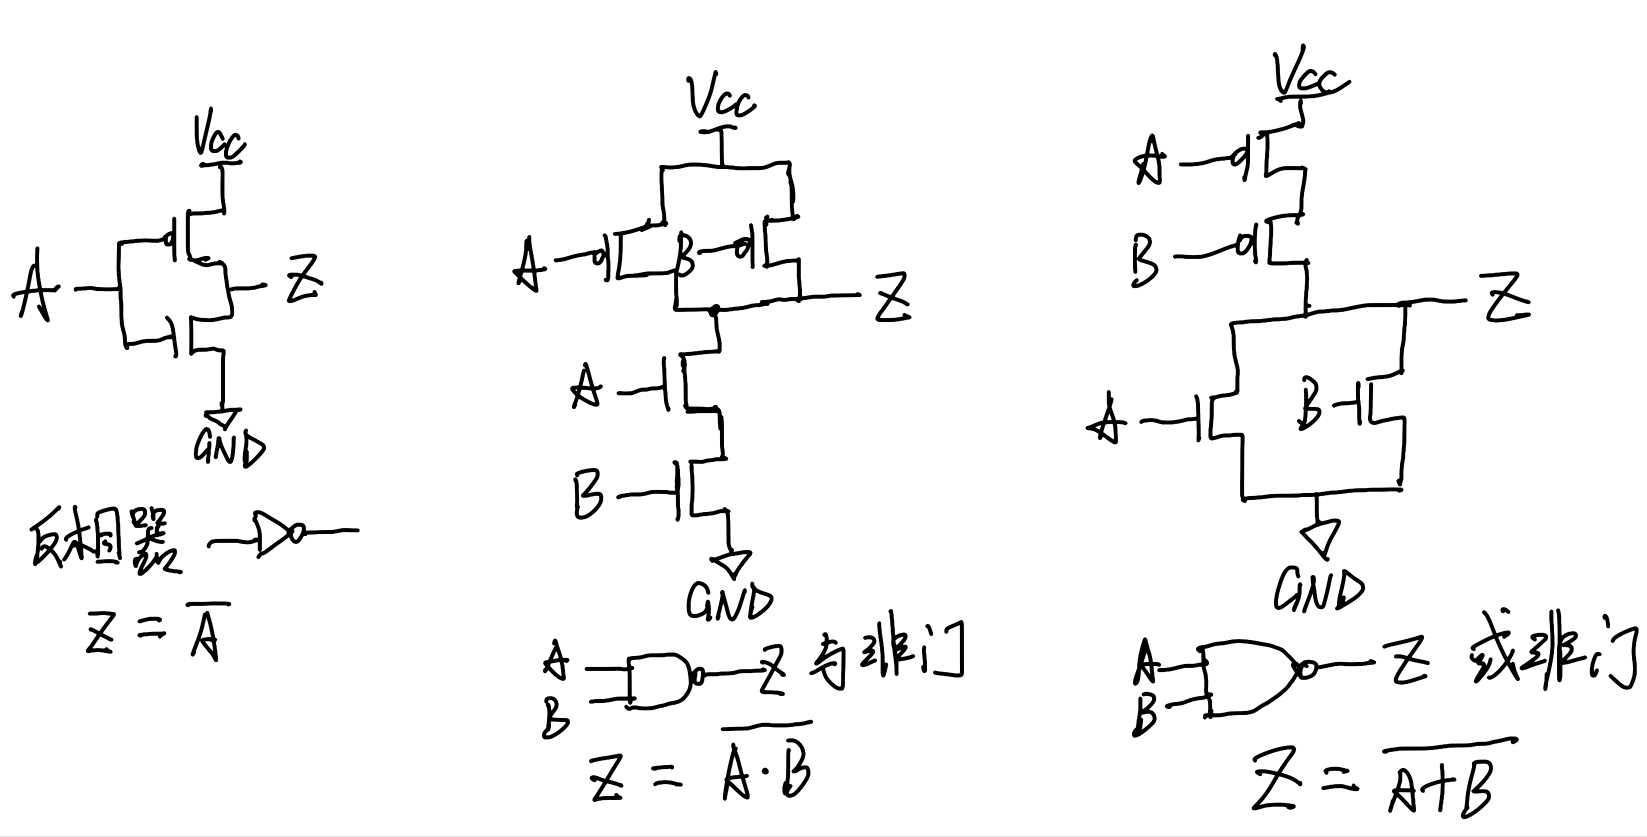 cmos集成电路的基本单元(反相器,与非门,或非门)